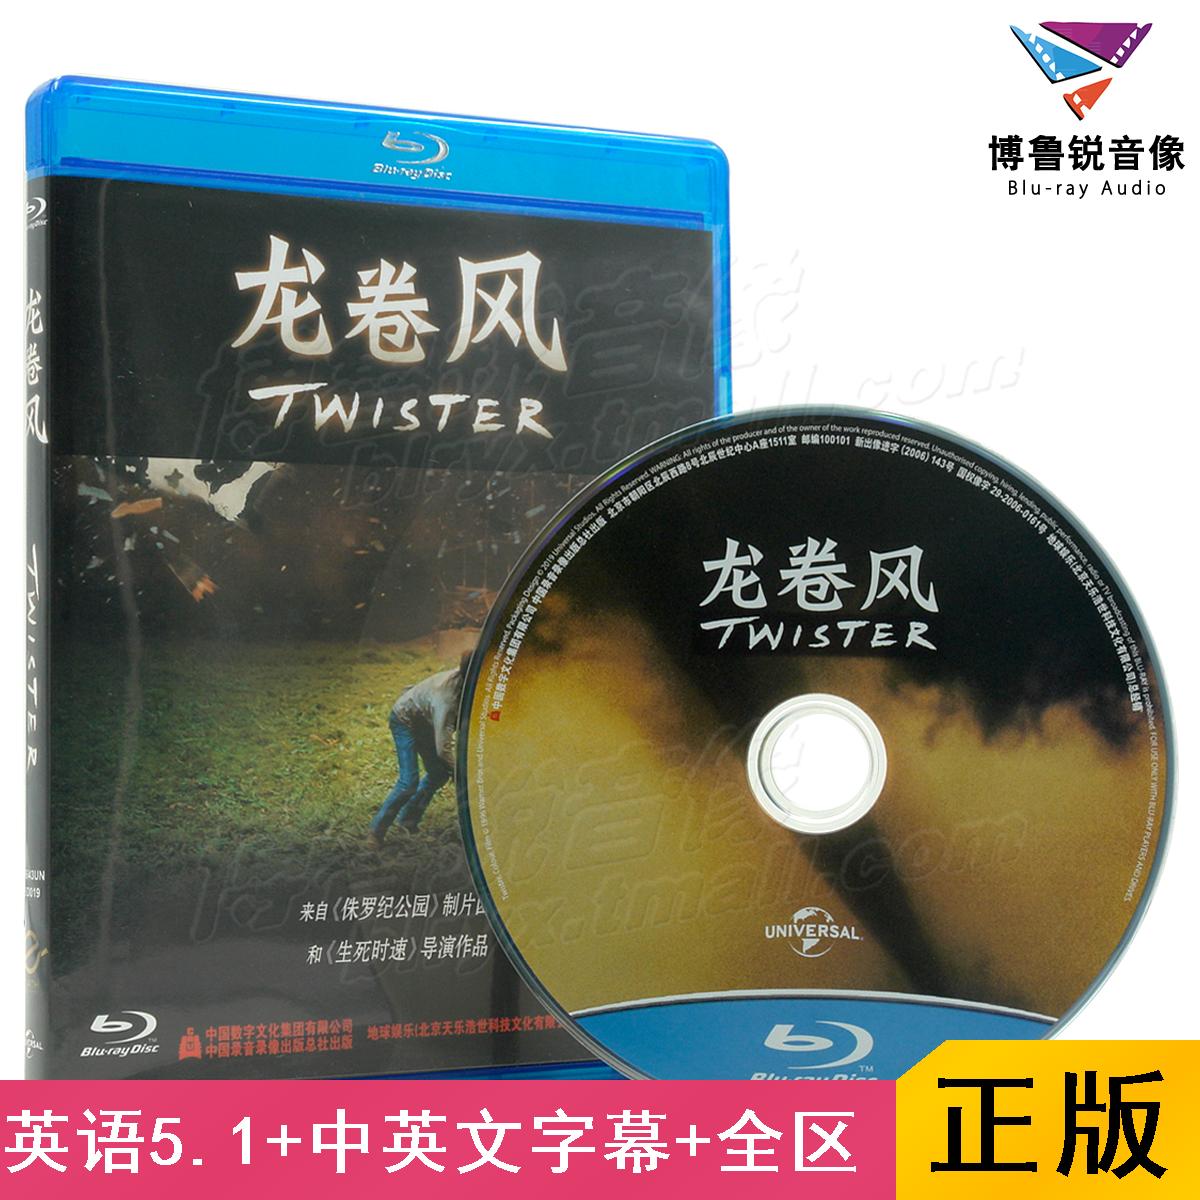 【现货】地球正版蓝光BD龙卷风暴Twister高清奥斯卡科幻电影碟片